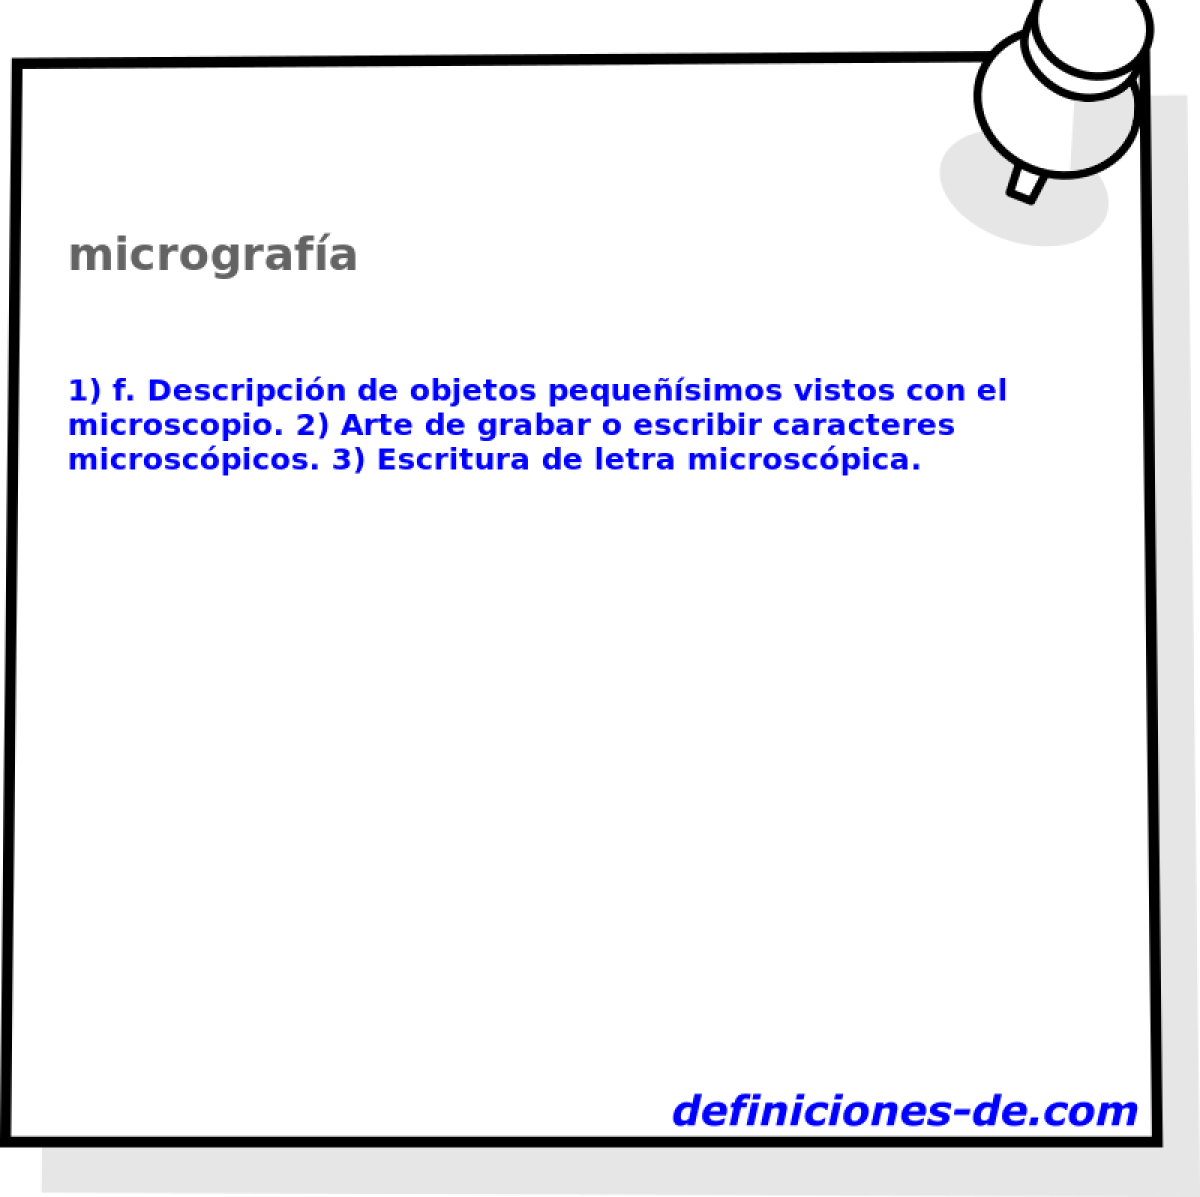 micrografa 